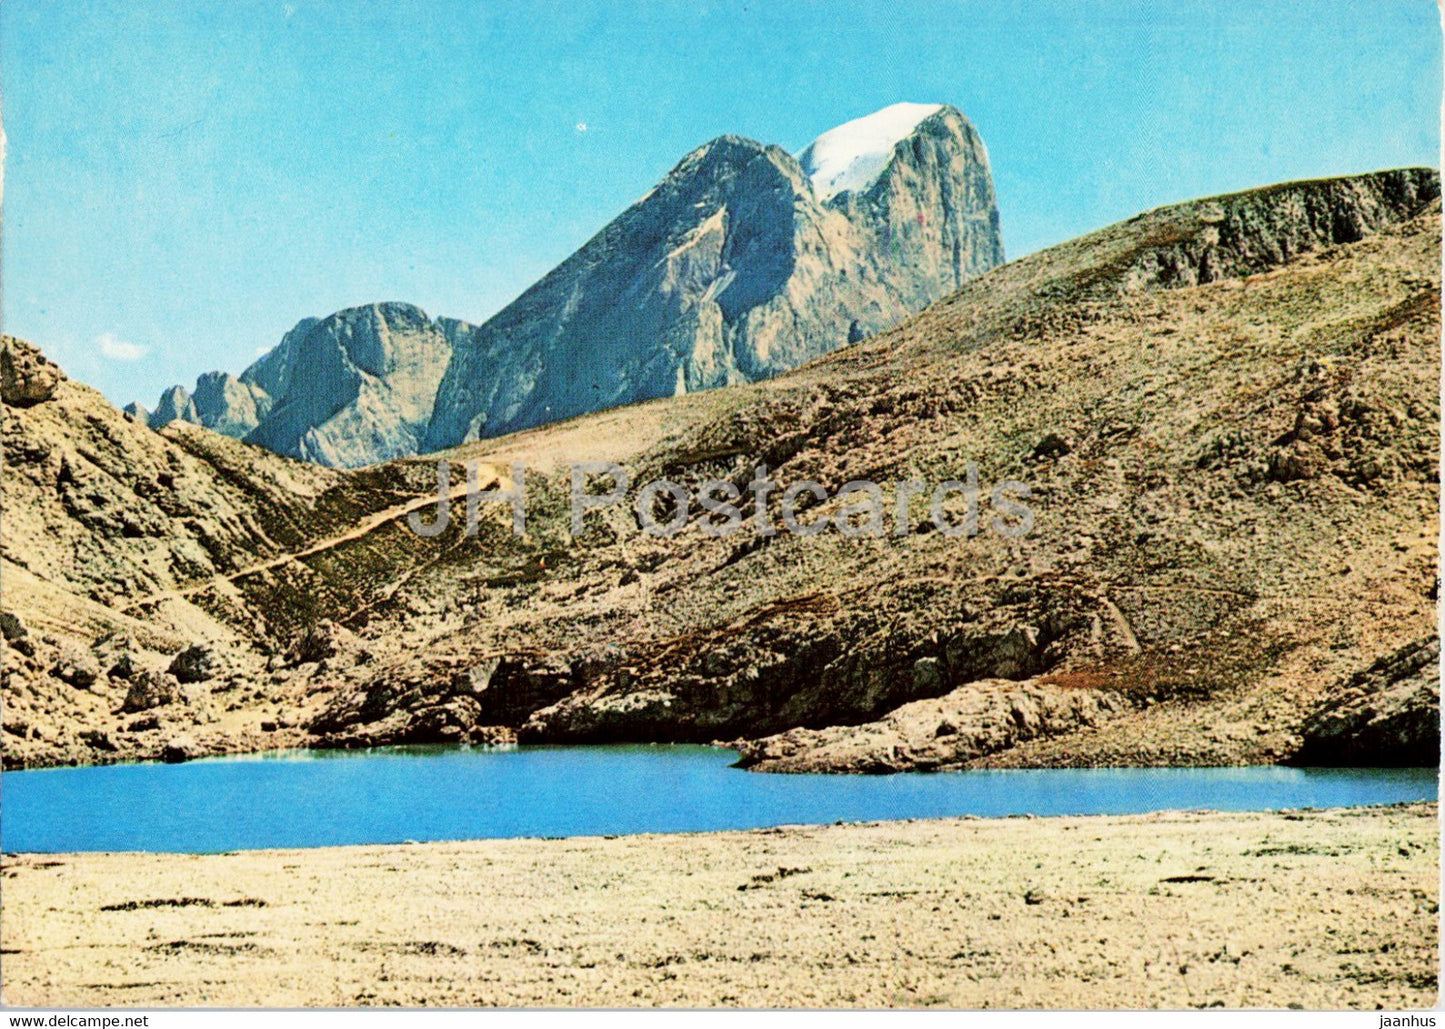 Valle di Fassa - Fleimstal - Gruppo del Catinaccio - Lago d'Antermoia - Marmolada - Italy - unused - JH Postcards